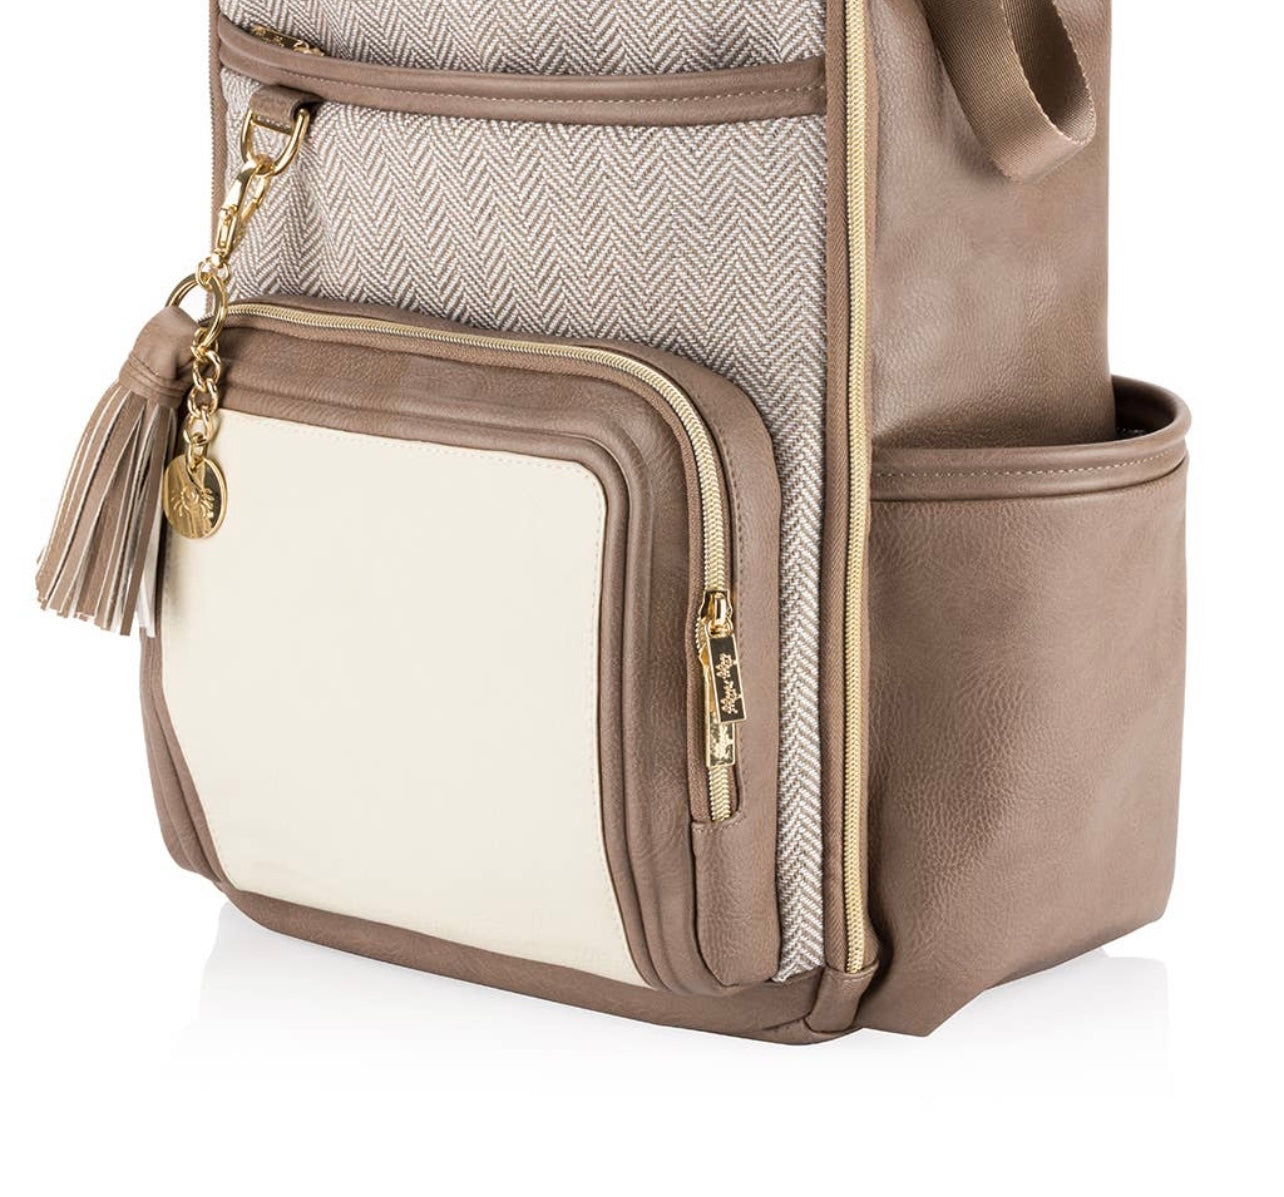 Vanilla Latte Boss Plus Backpack Diaper Bag